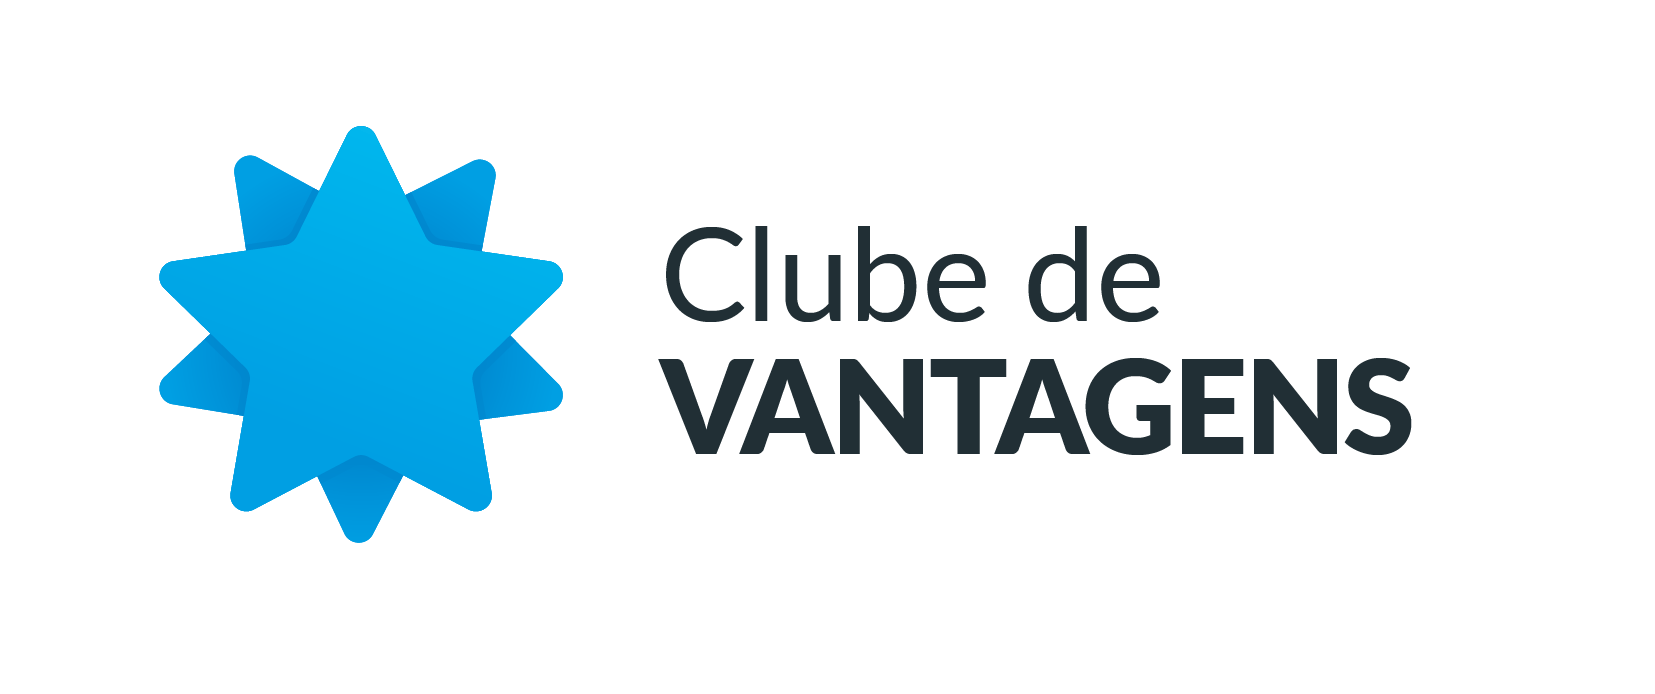 Clube de Vantagens – Informa FMU